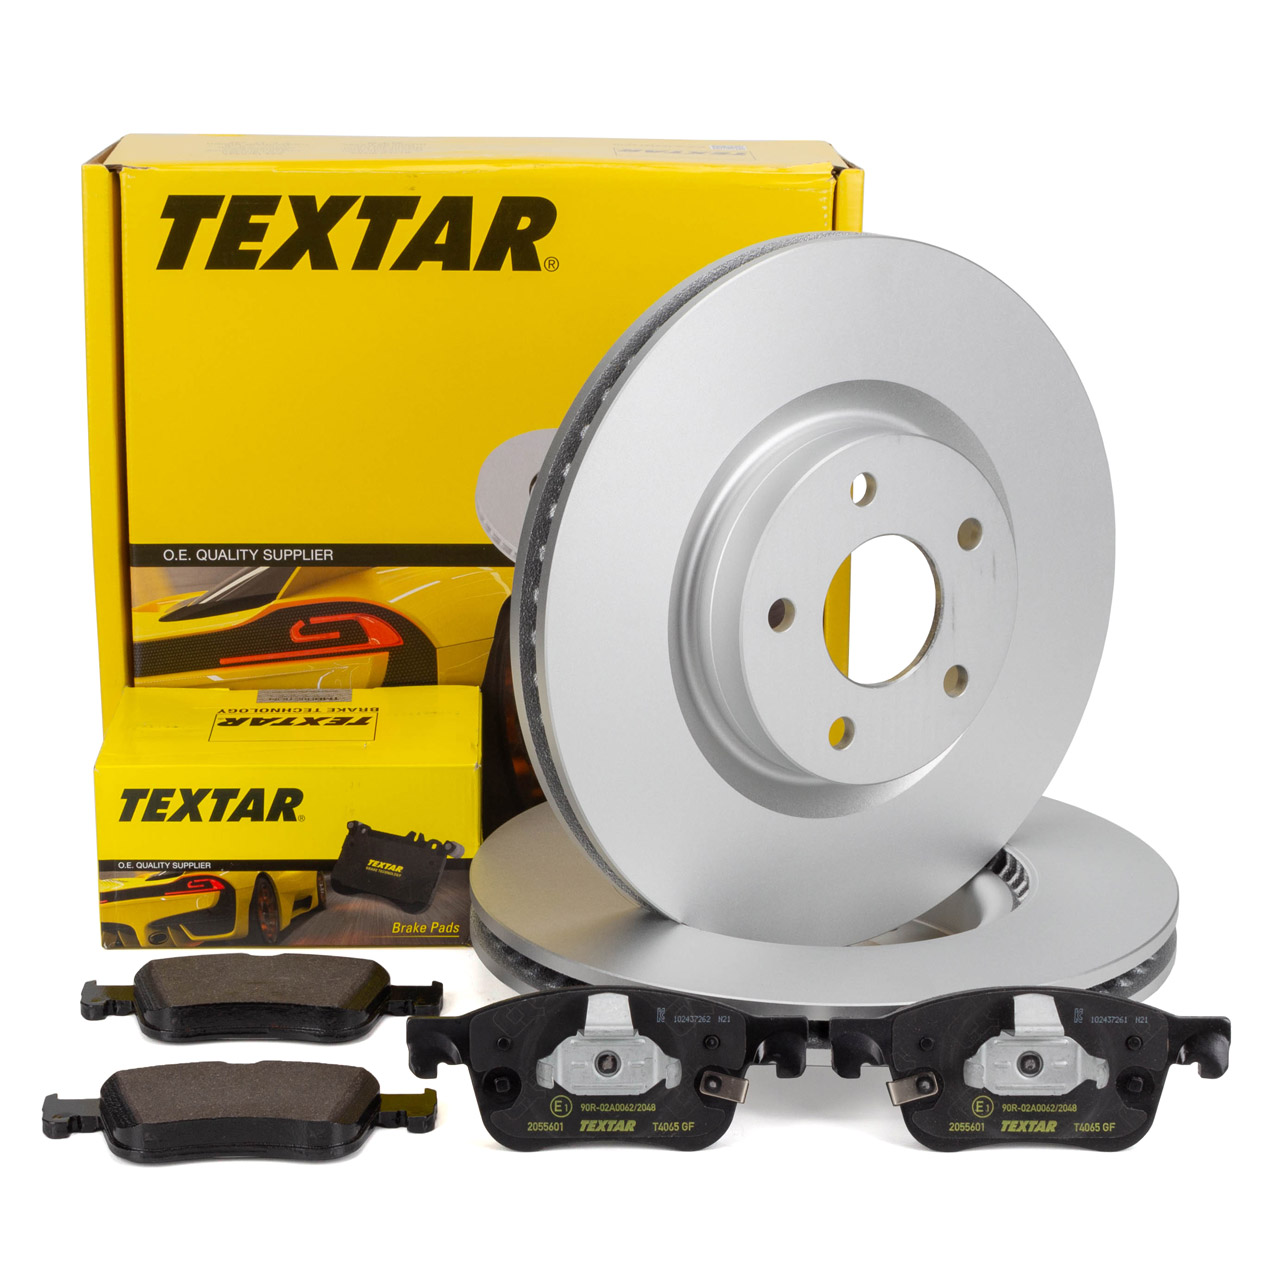 TEXTAR Bremsen Set Bremsscheiben + Bremsbeläge FORD Focus 4 MK4 Kuga 3 MK3  vorne 